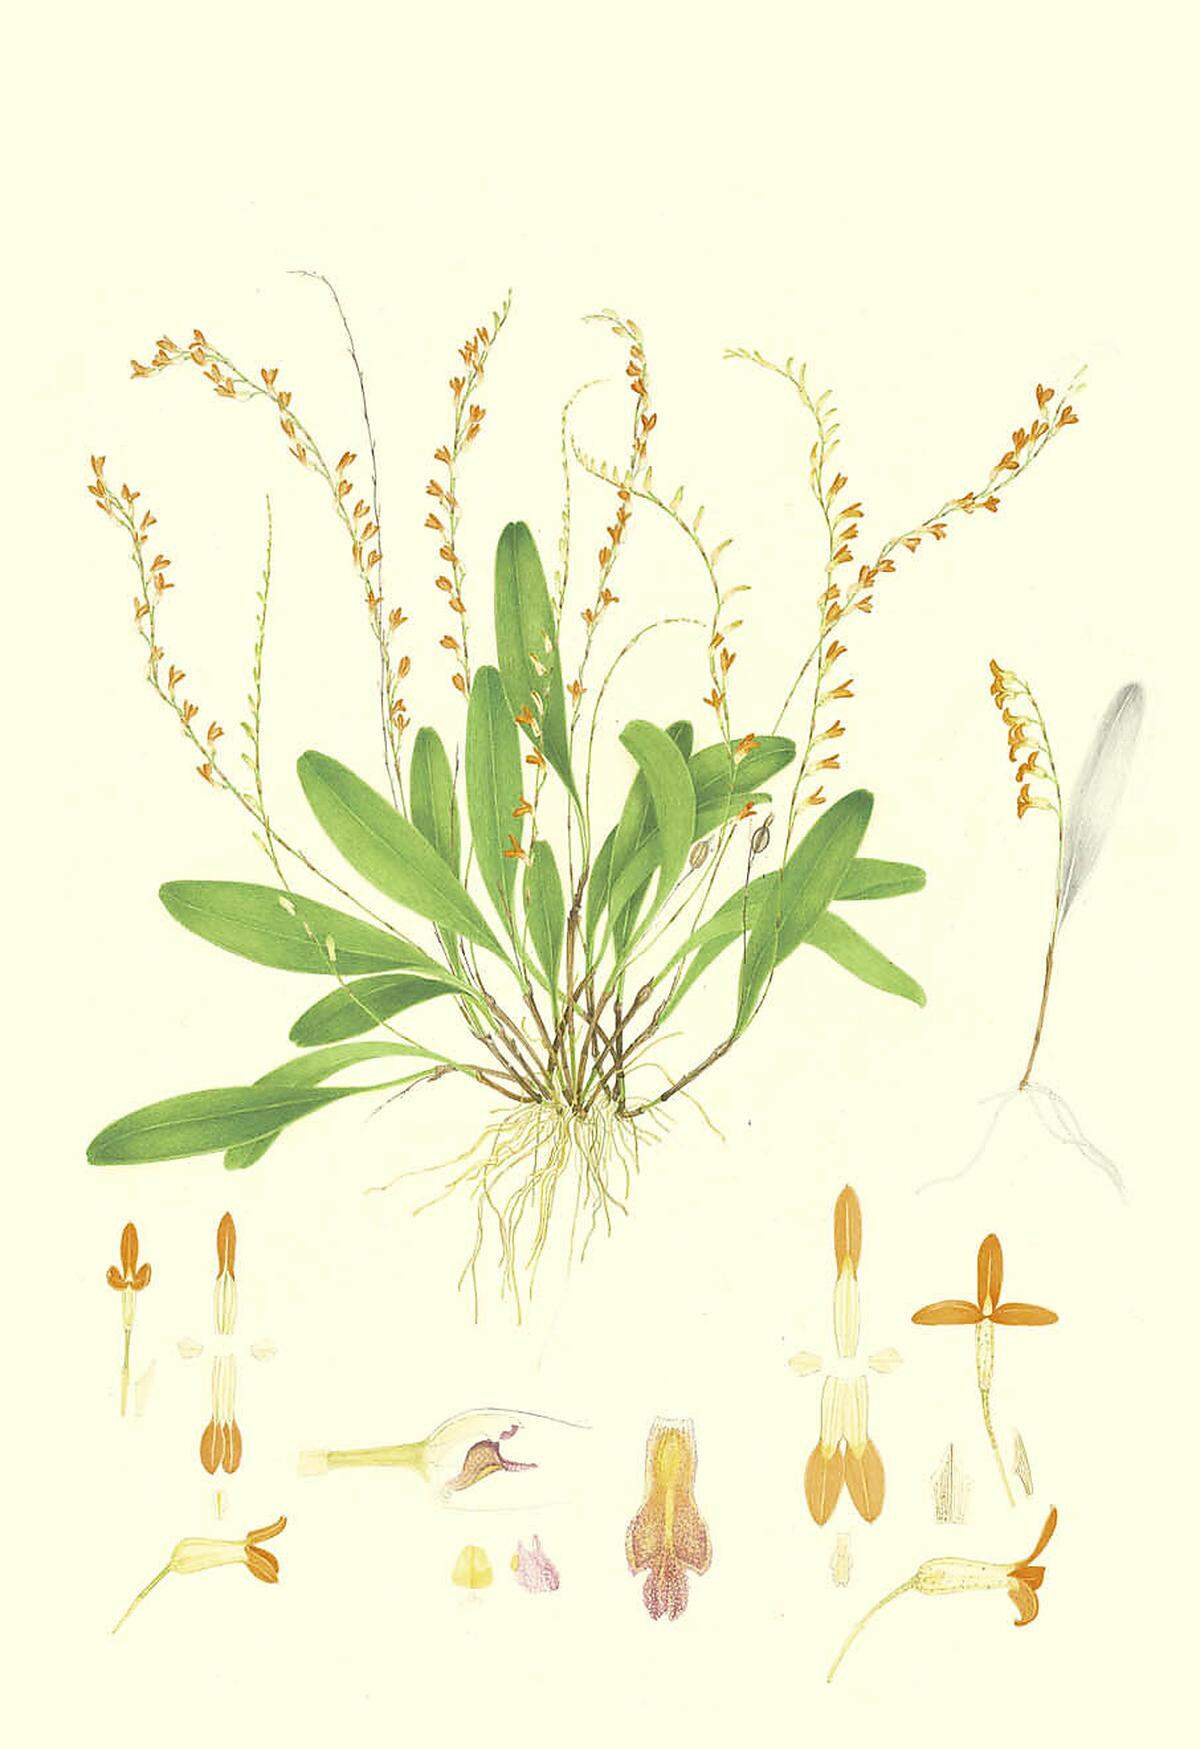 Physosiphon moorei ist eine nach dem britischen Entomologen Frederic Moore benannte Orchideenart. In der botanischen Illustration können für die Beschreibung durch Biologen relevante Pflanzenteile extra abgebildet werden.